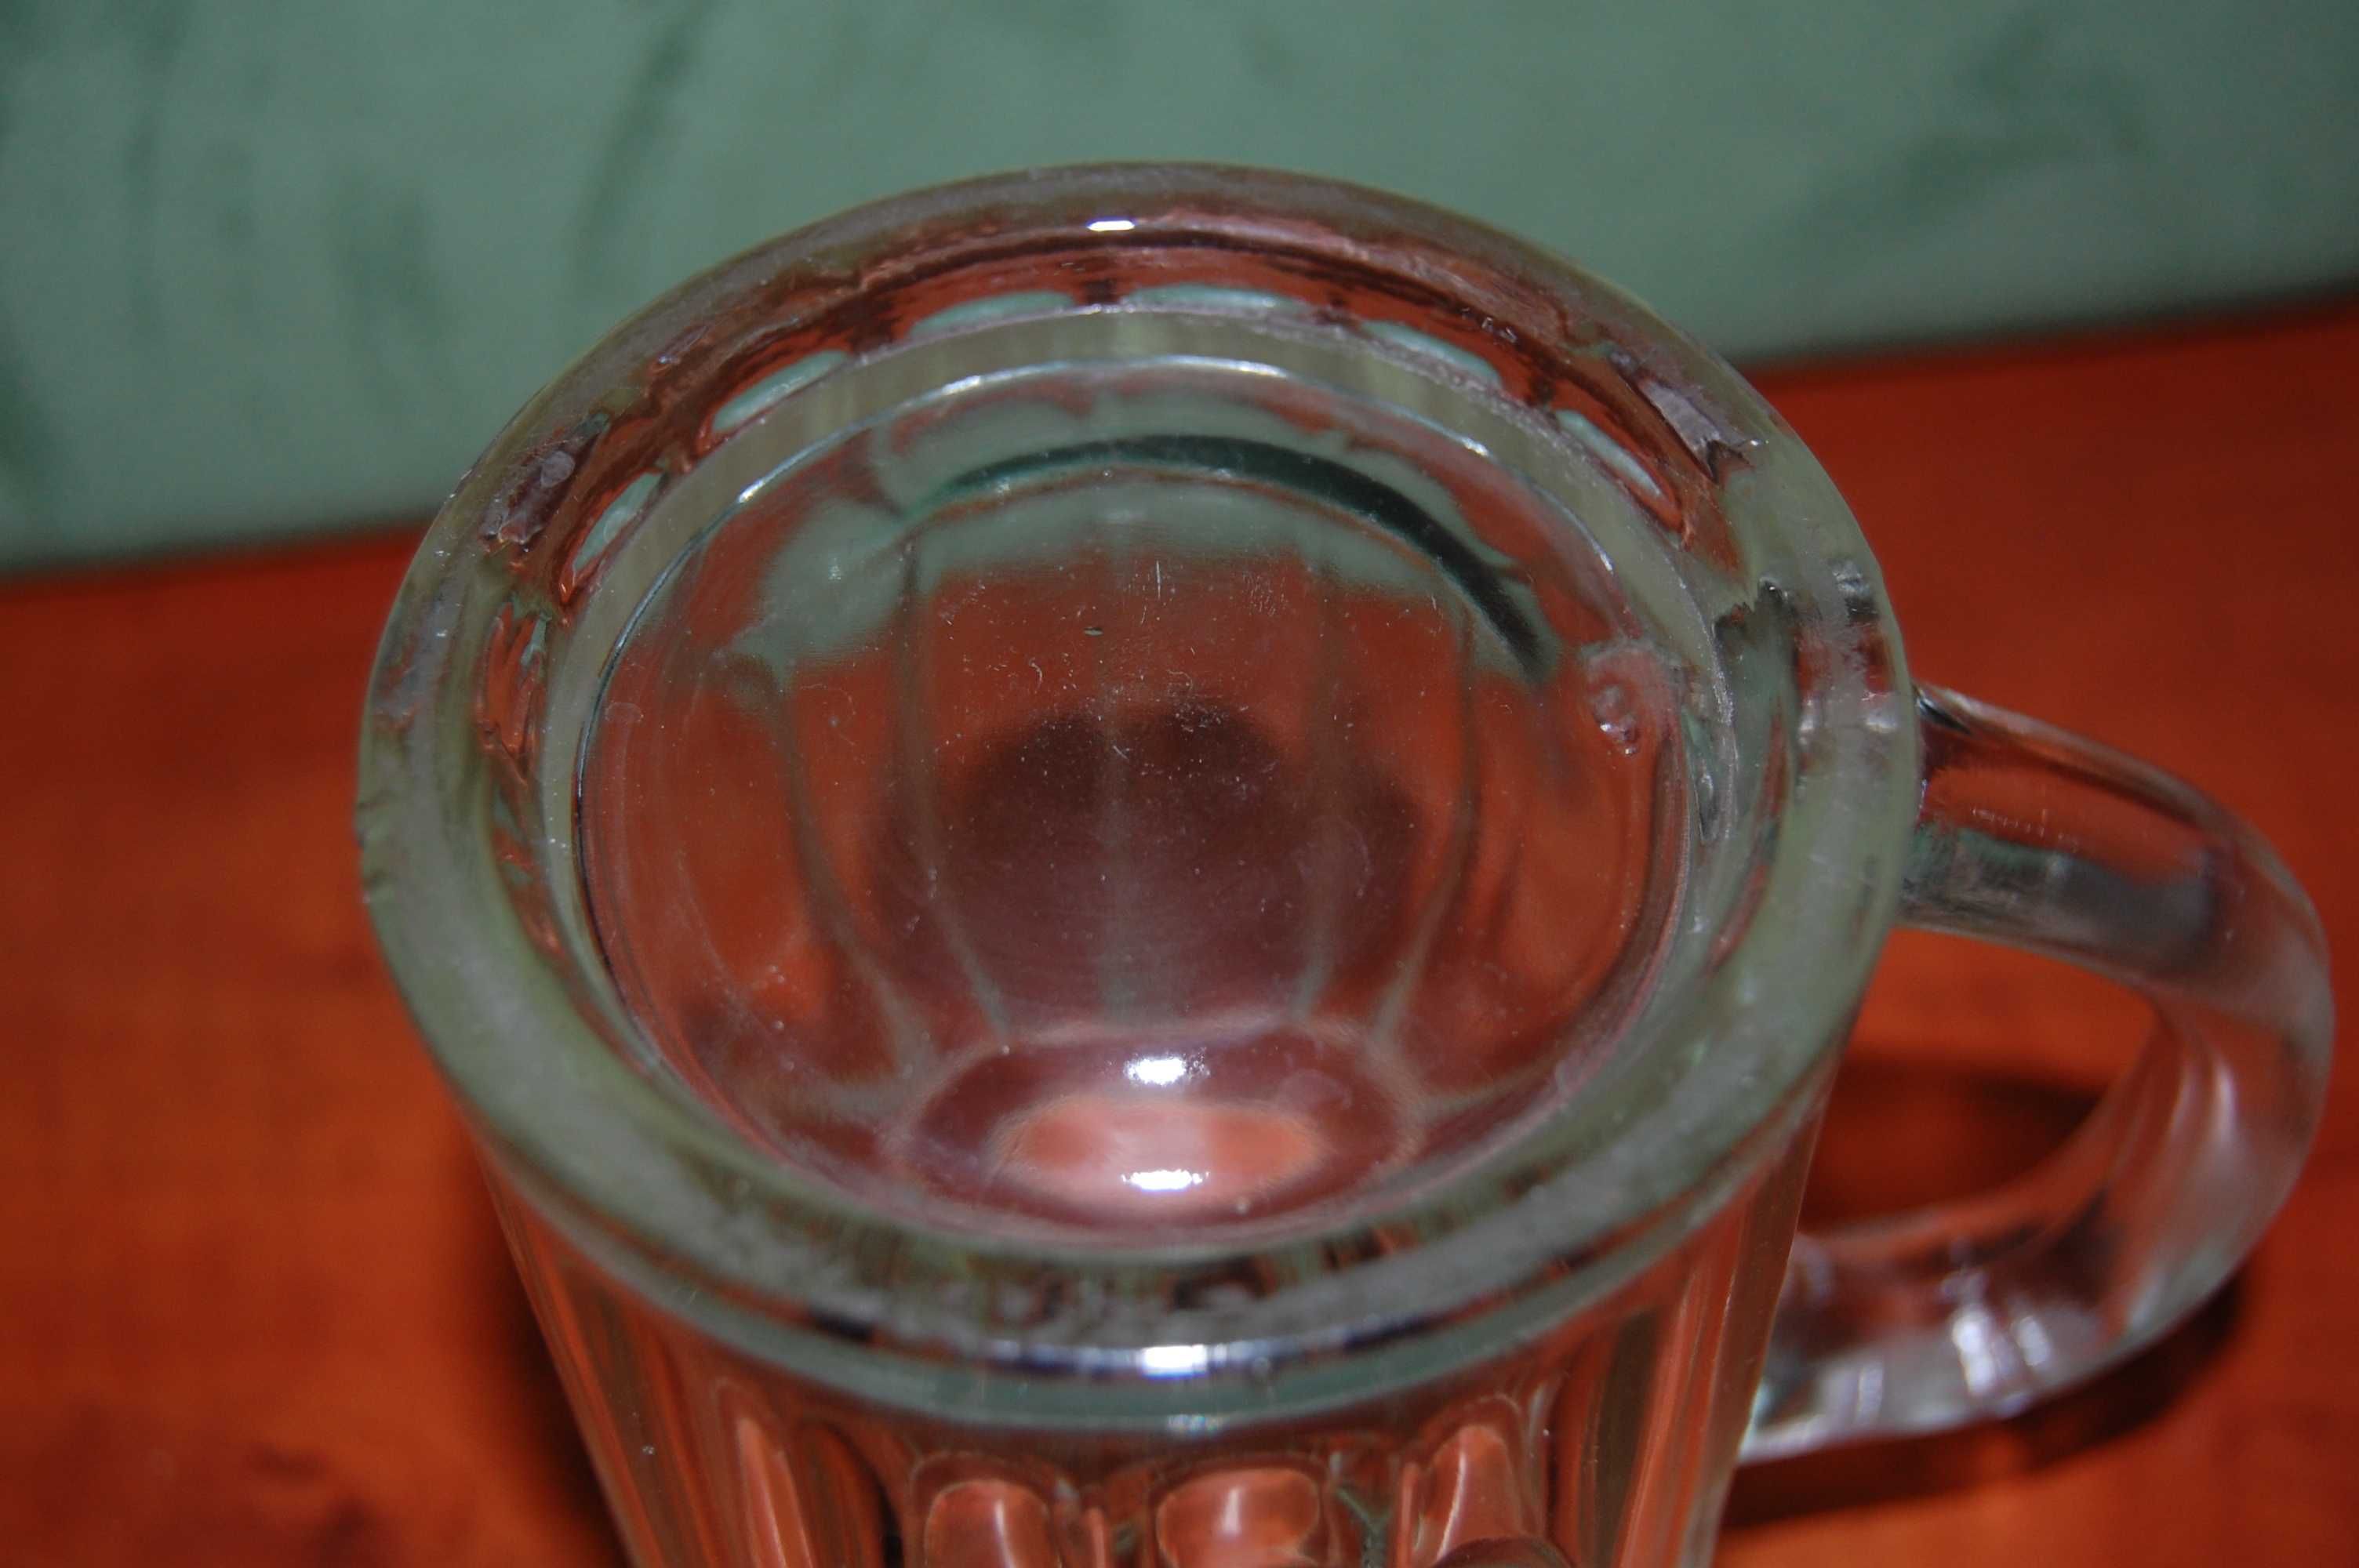 Szklany kufel na piwo - 0,5l